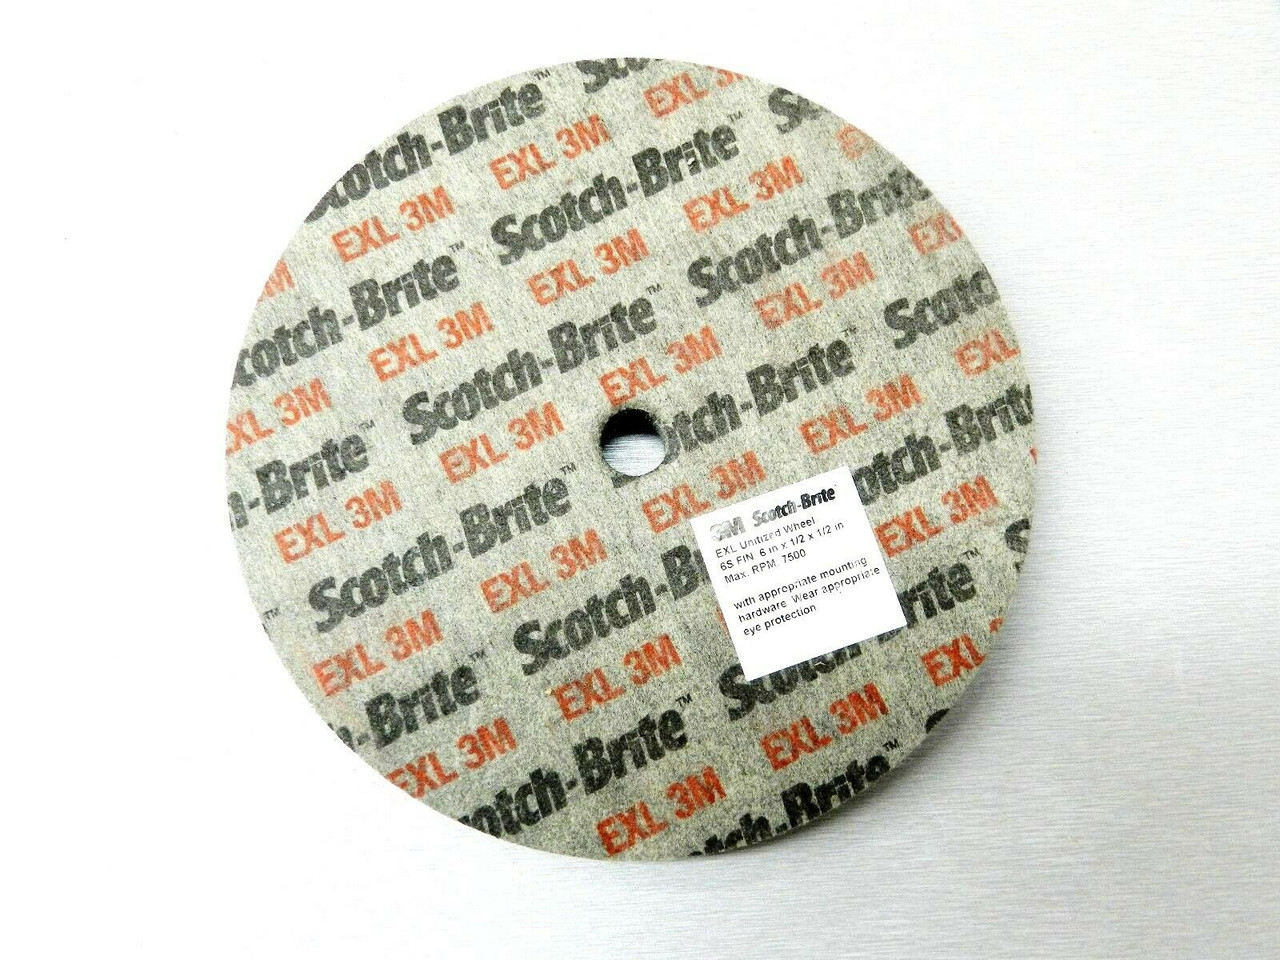 10000 RPM Abrasive Grit 3 x 1/2 x 3/16 2S FIN 3 Diameter Pack of 20 Scotch-Brite 27941 EXL Unitized Wheel